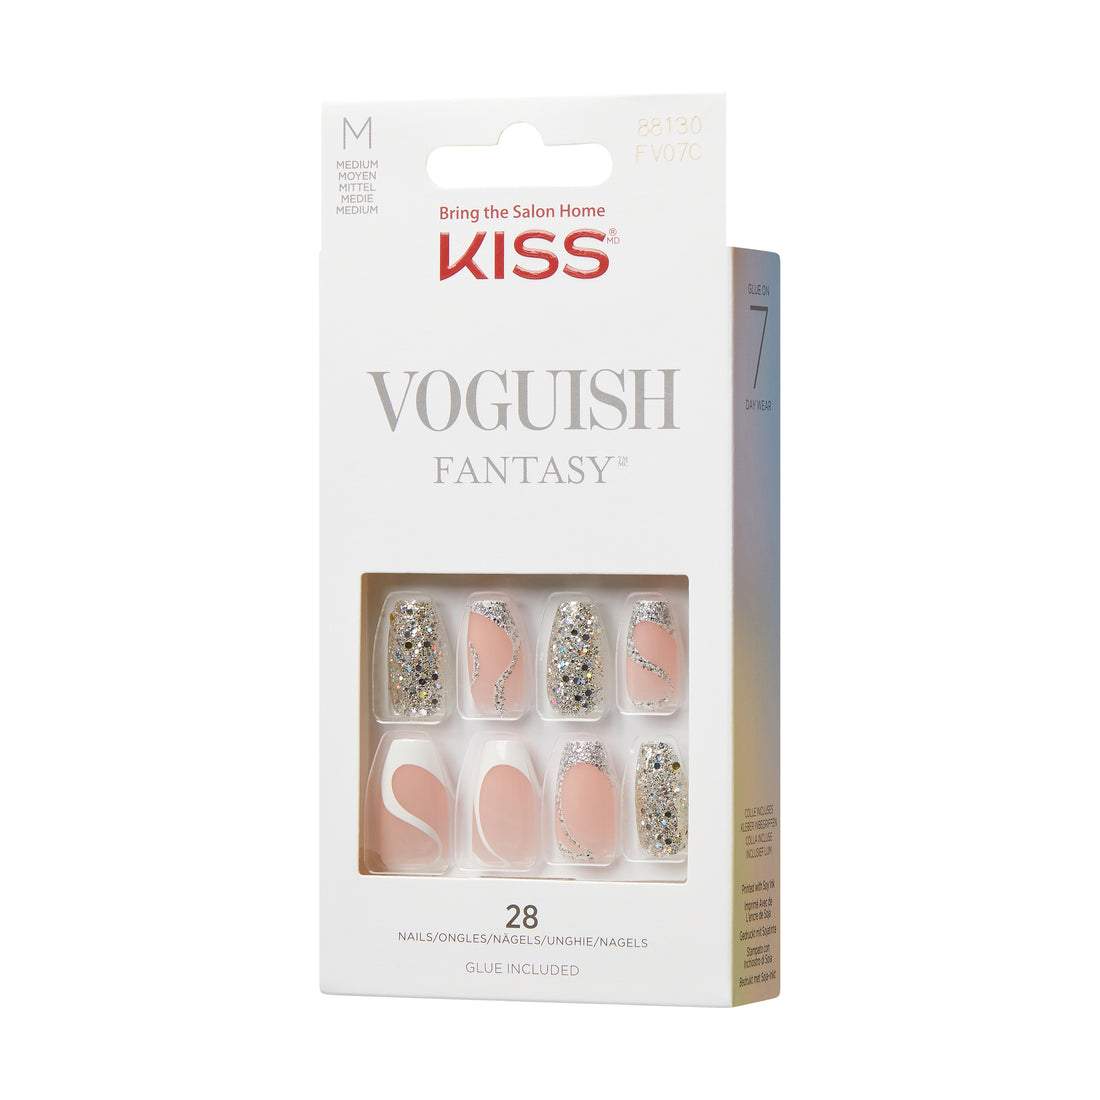 KISS Voguish Fantasy Nails - Fashspiration